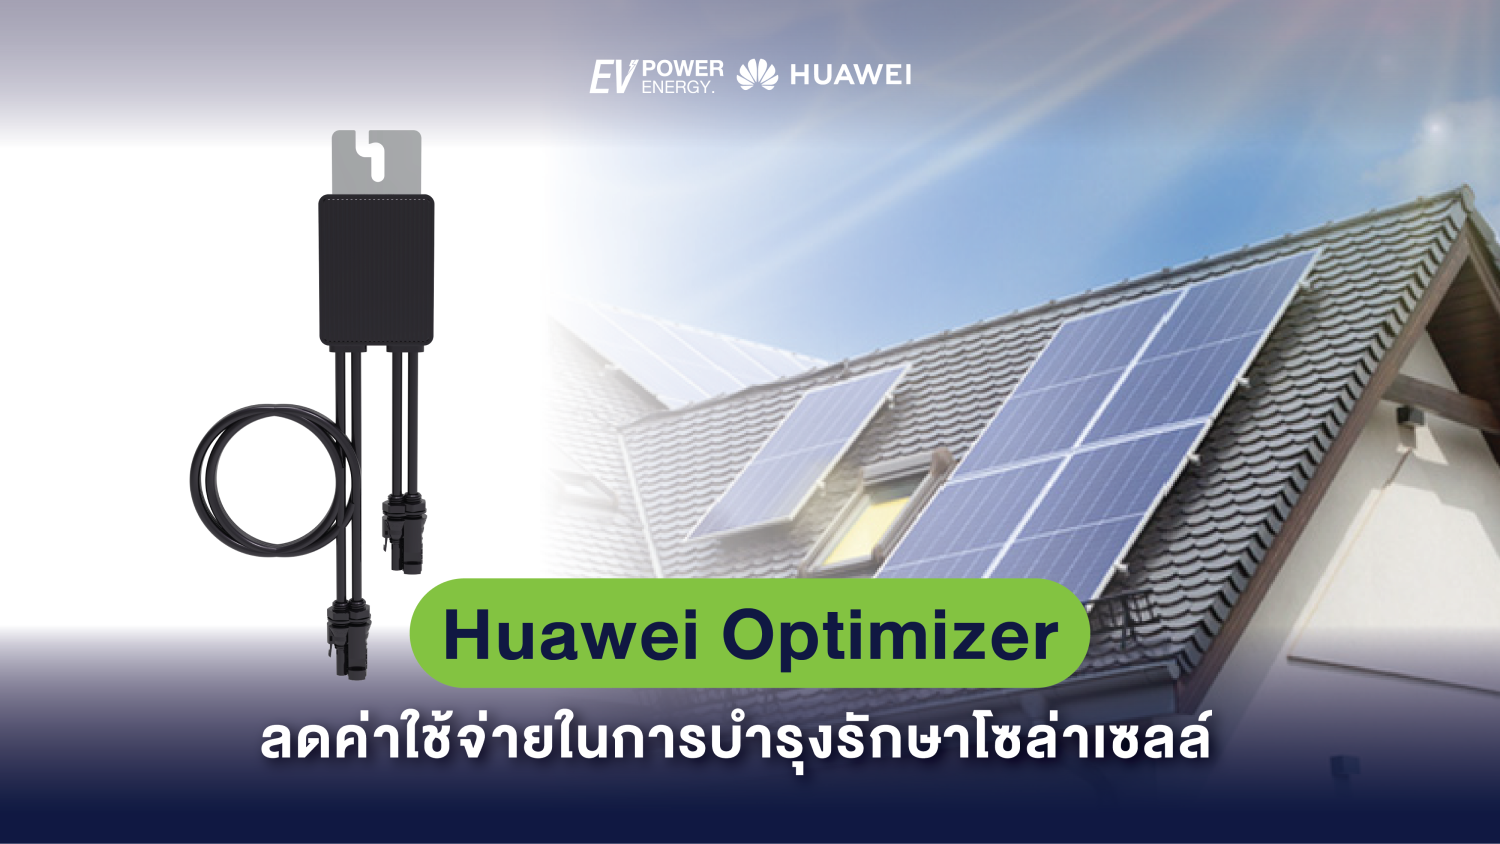 Huawei Optimizer ลดค่าใช้จ่ายในการบำรุงรักษาโซล่าเซลล์